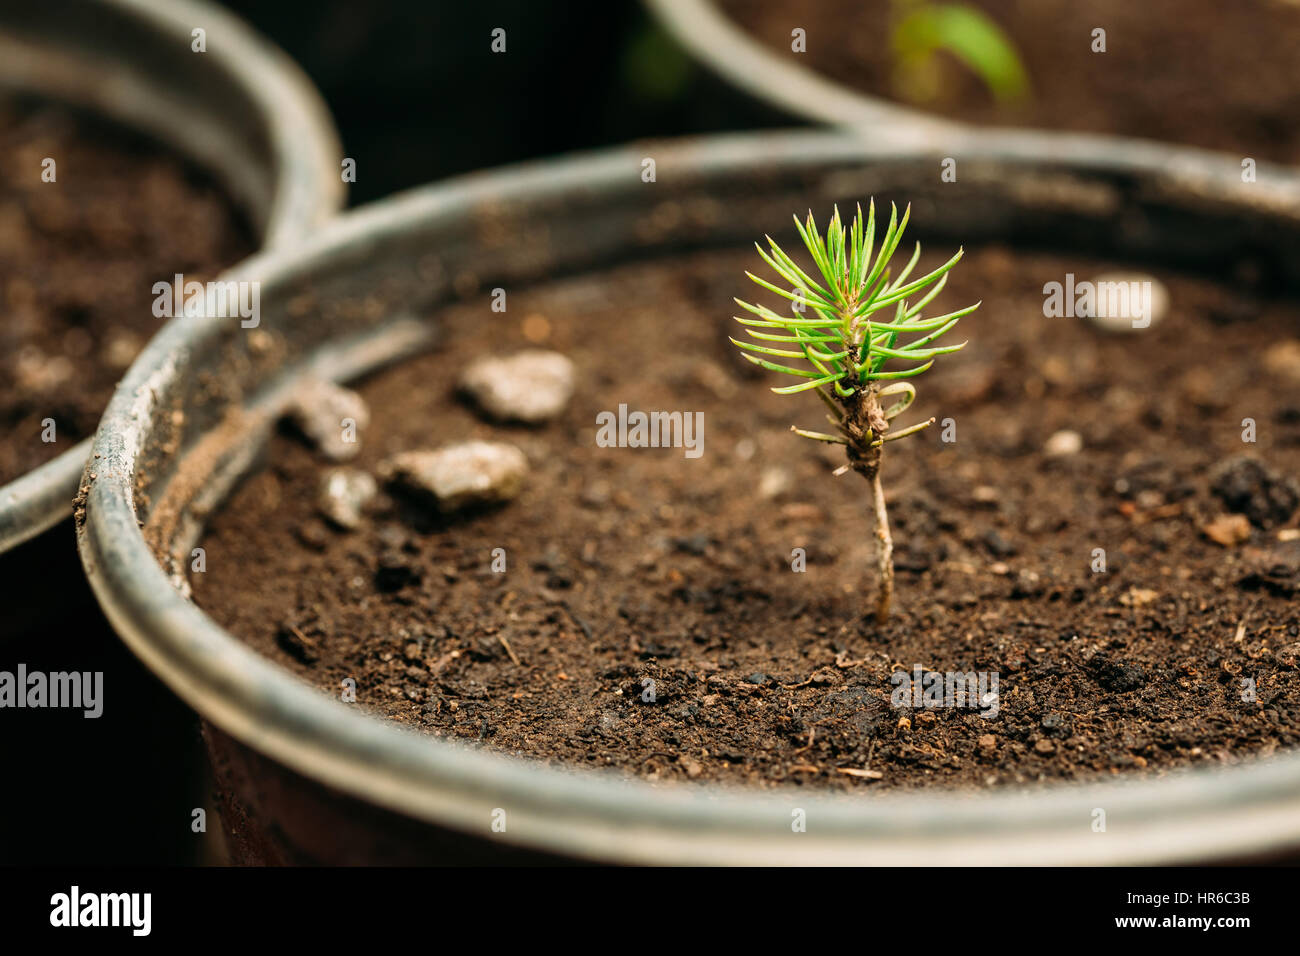 Kleine grüne Sprossen Kiefer Baum Pflanze mit Blatt, Blätter wachsen aus dem Boden im Topf im Gewächshaus oder Gewächshaus. Frühling, Konzept des neuen Lebens. Stockfoto